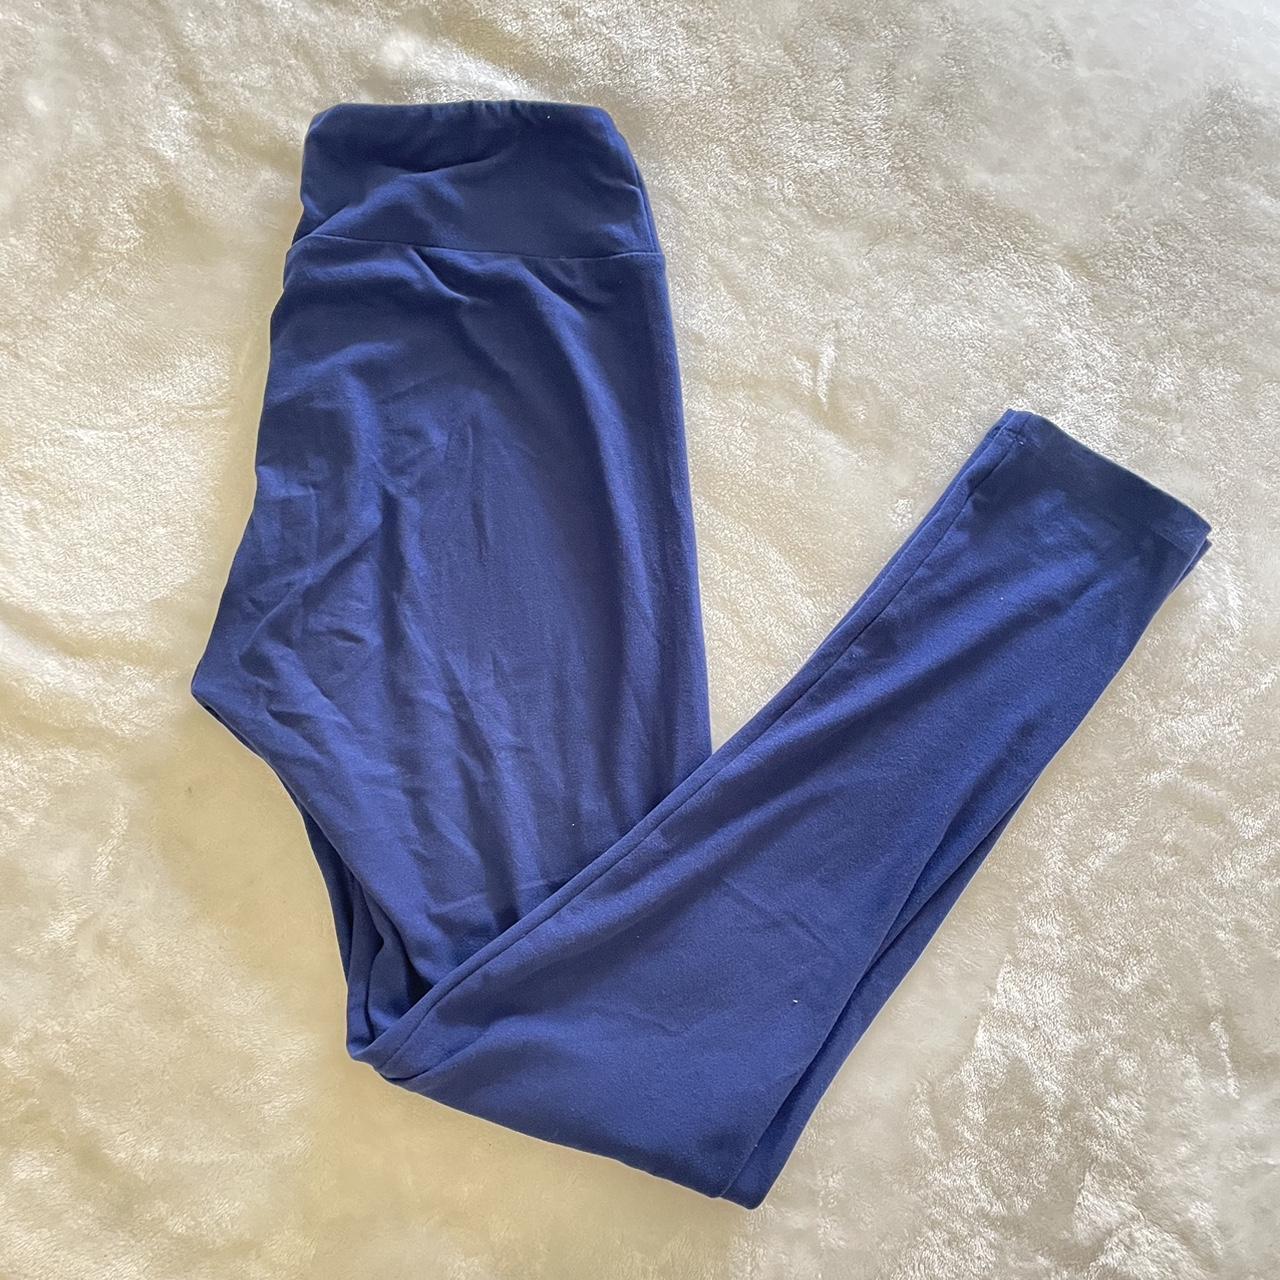 Lularoe navy blue leggings, size one size